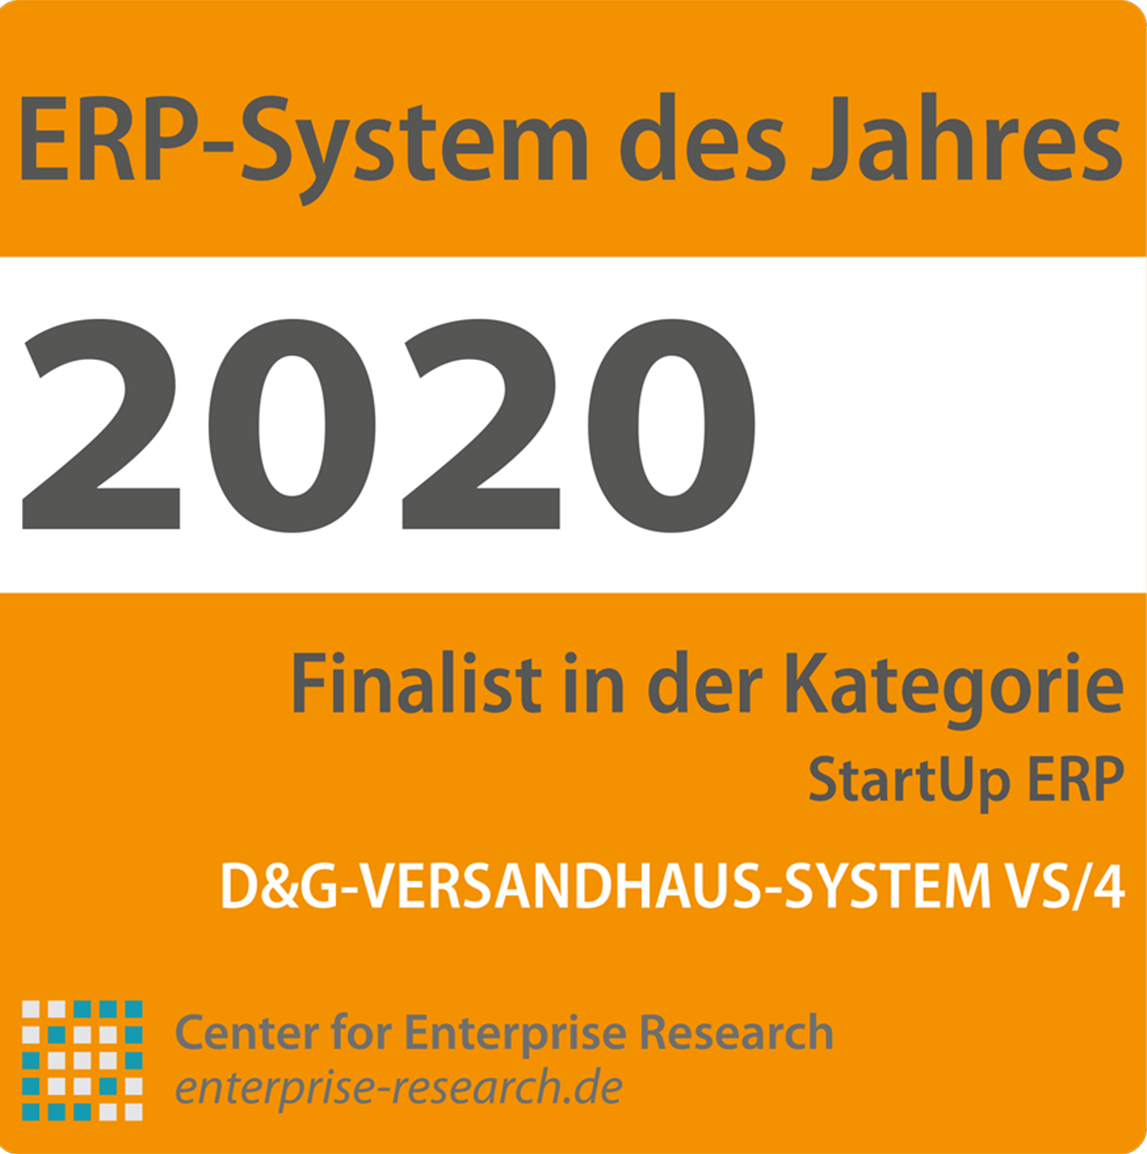 ERP-System des Jahres - zweichfache Auszeichnung für das D&G-Versandhaus-System VS/4 Bild 2